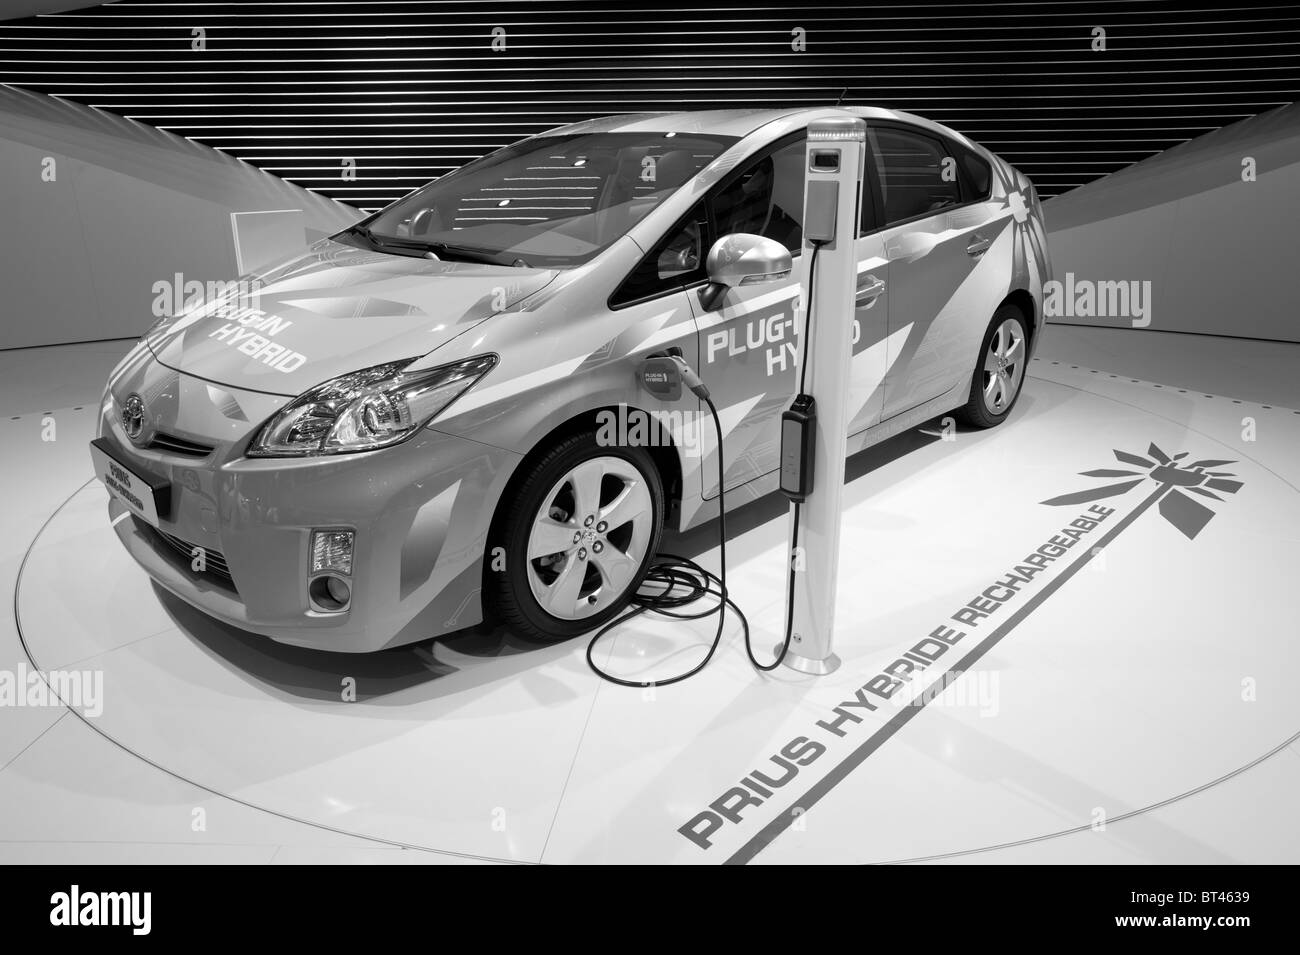 Plugin de Toyota Prius híbrido de coches en Paris Motor Show 2010 Foto de stock